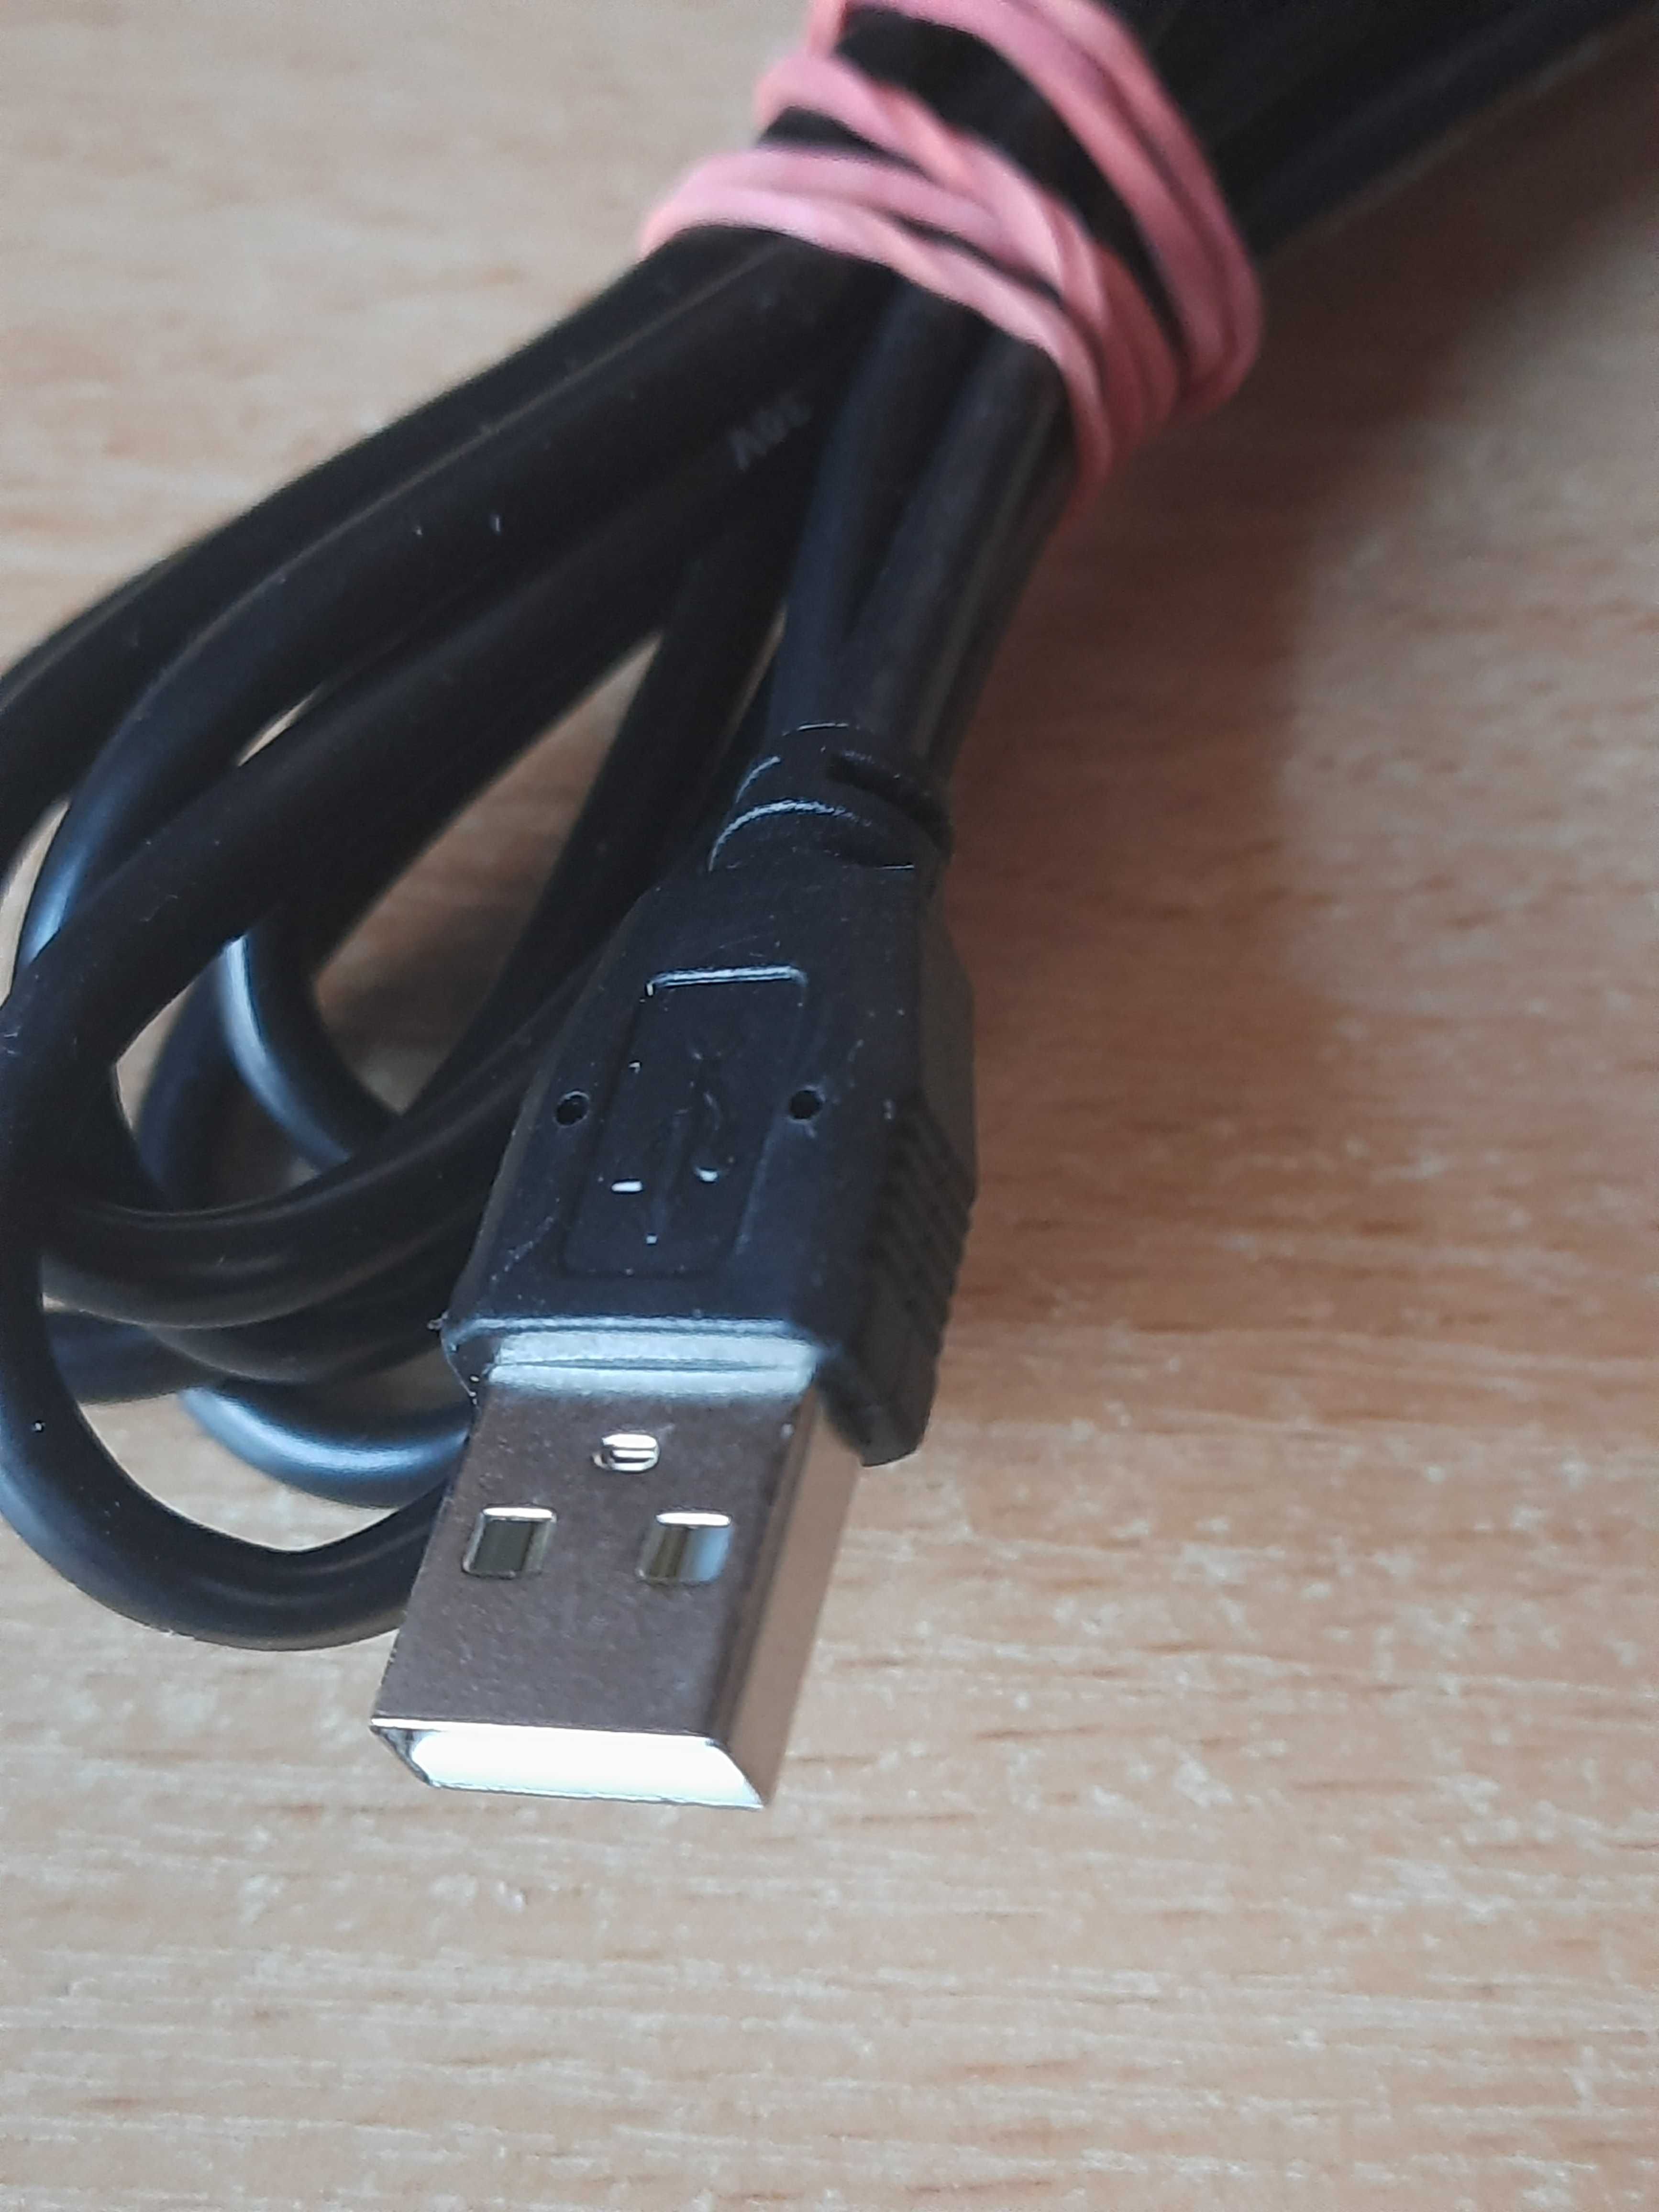 Кабель USB type A - B. USB 2.0 для принтеру.